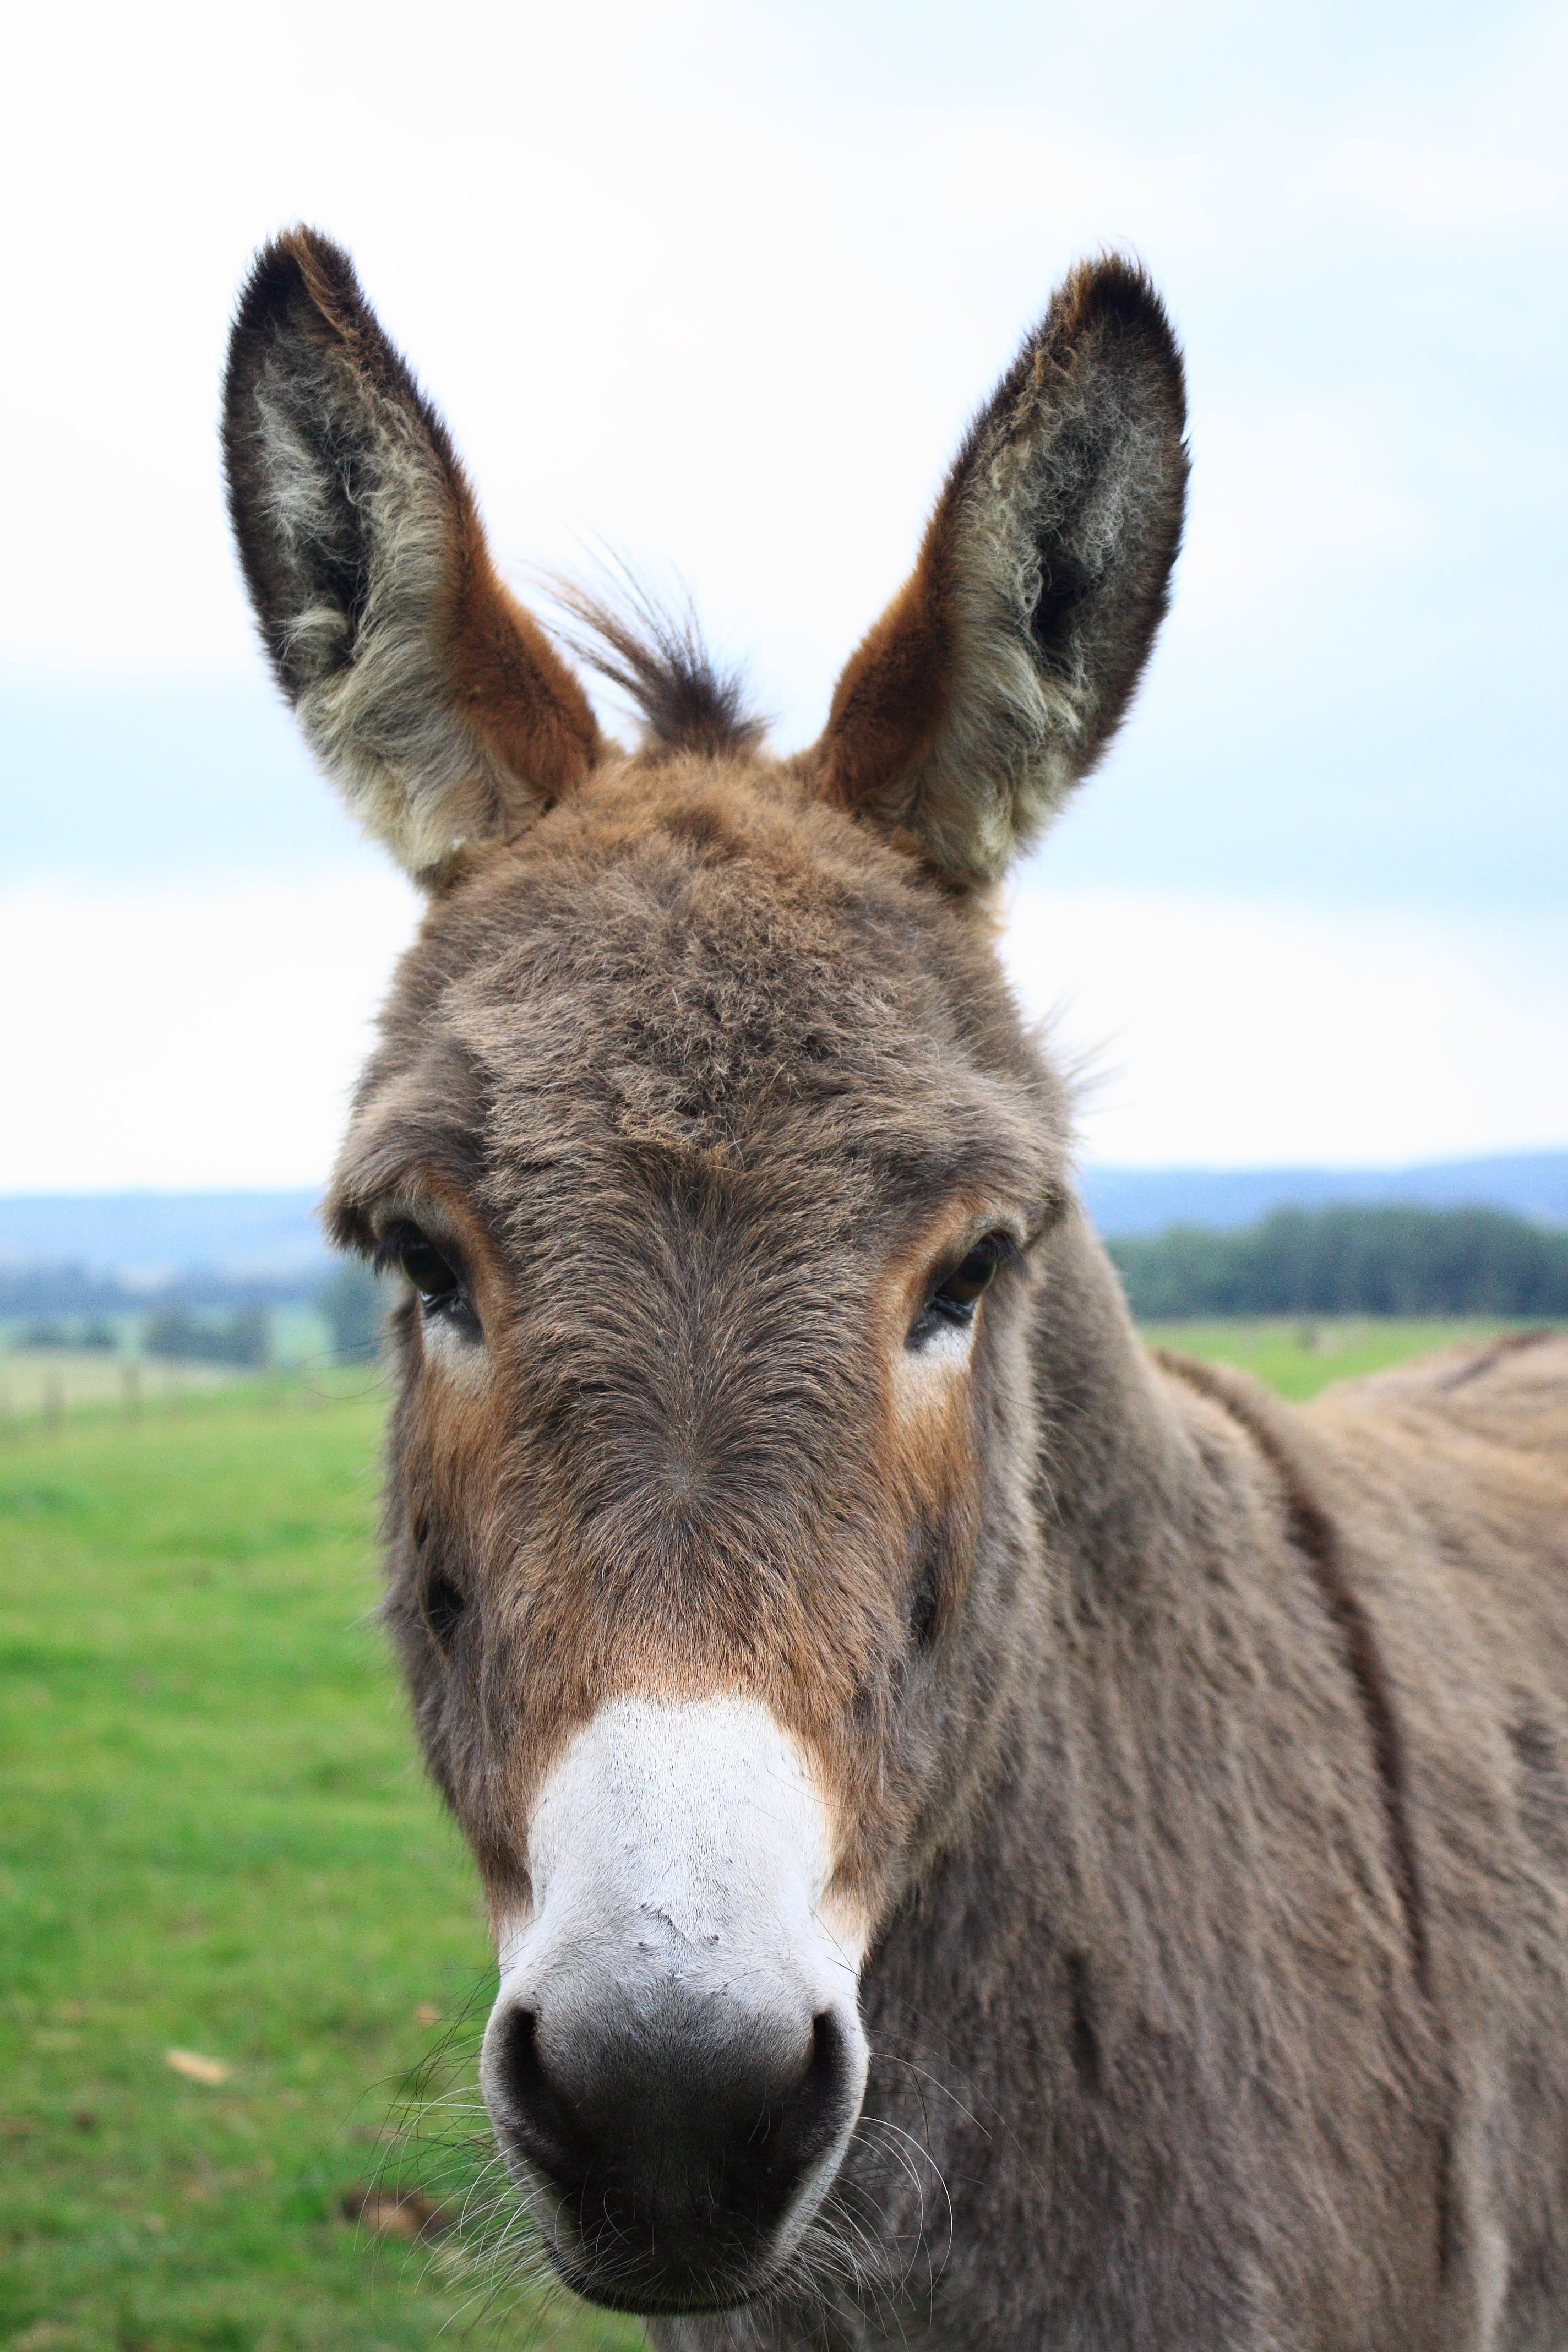 closeup photo of donkey, lelkendorf, gray donkey, donkey head